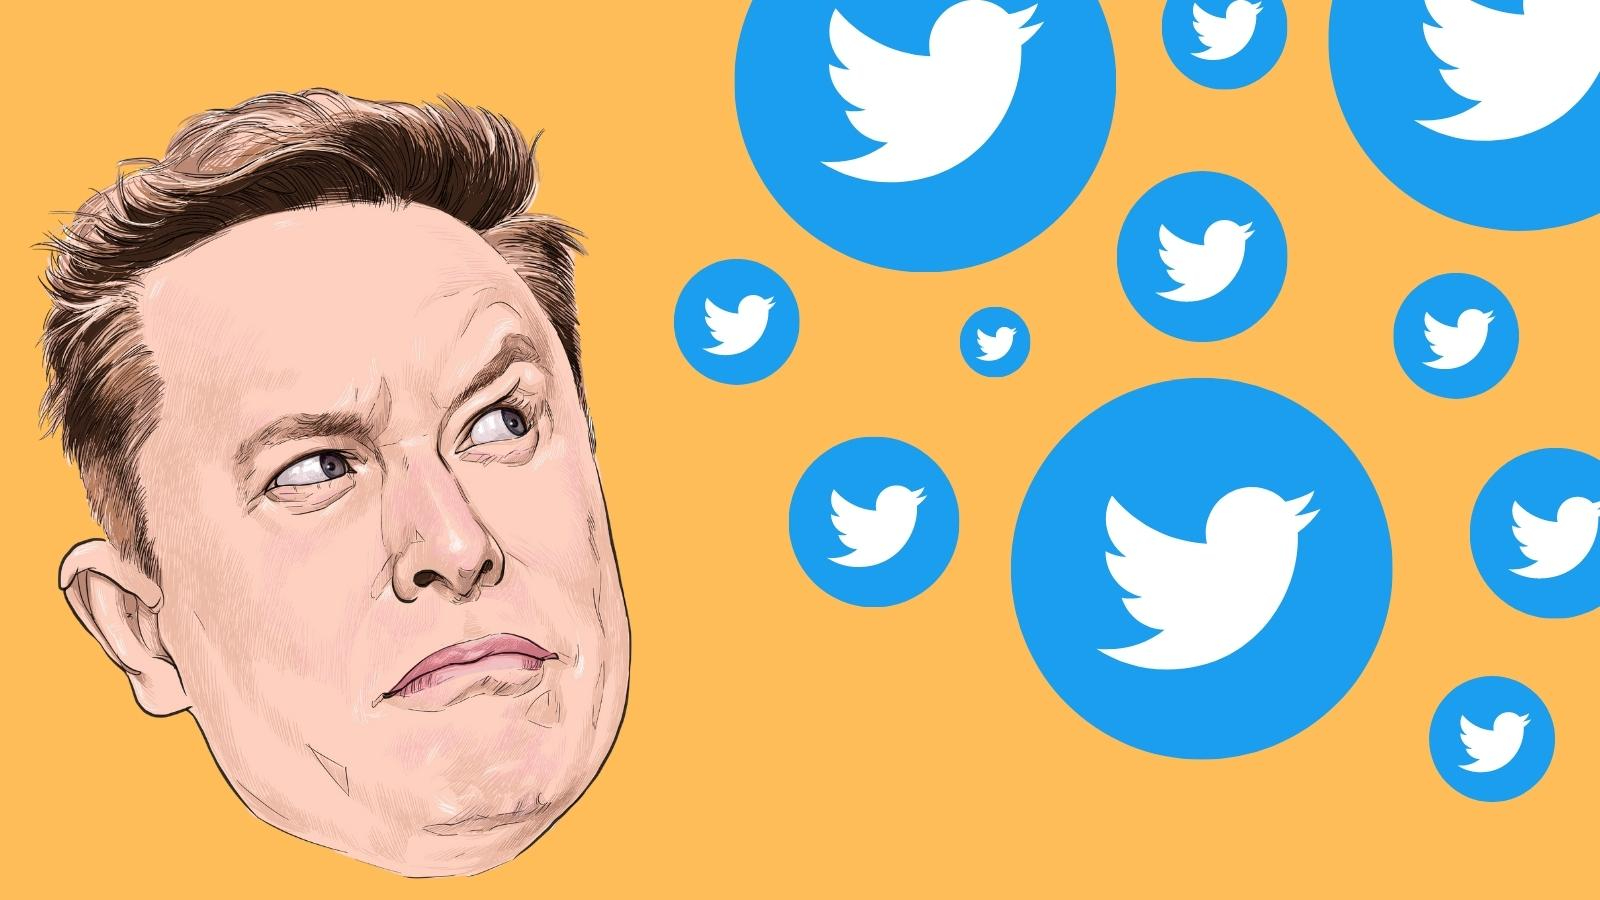 Иллюстрация Элона Маск, нарисованный thongyhod, недоуменно смотрит на падающие логотипы Twitter